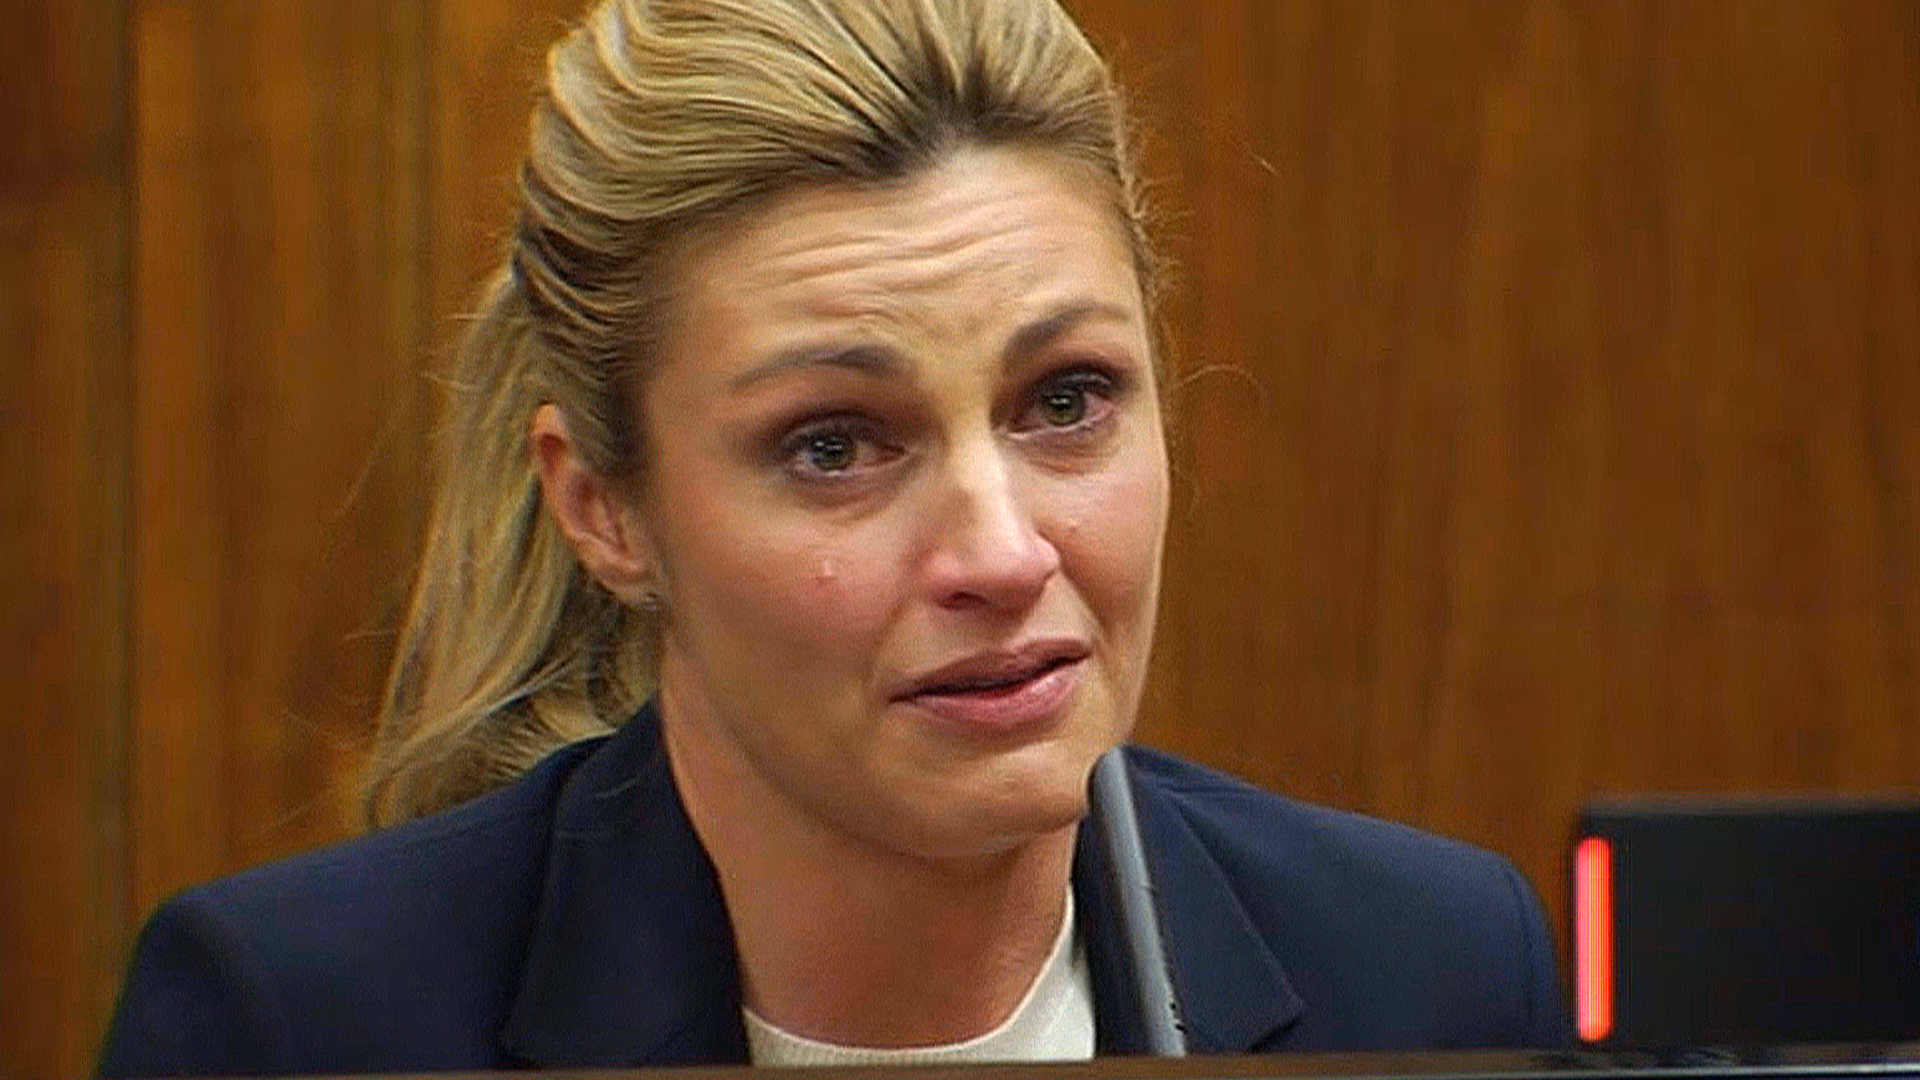 Sportscaster Erin Andrews emotional in testimony against stalker - CBS News